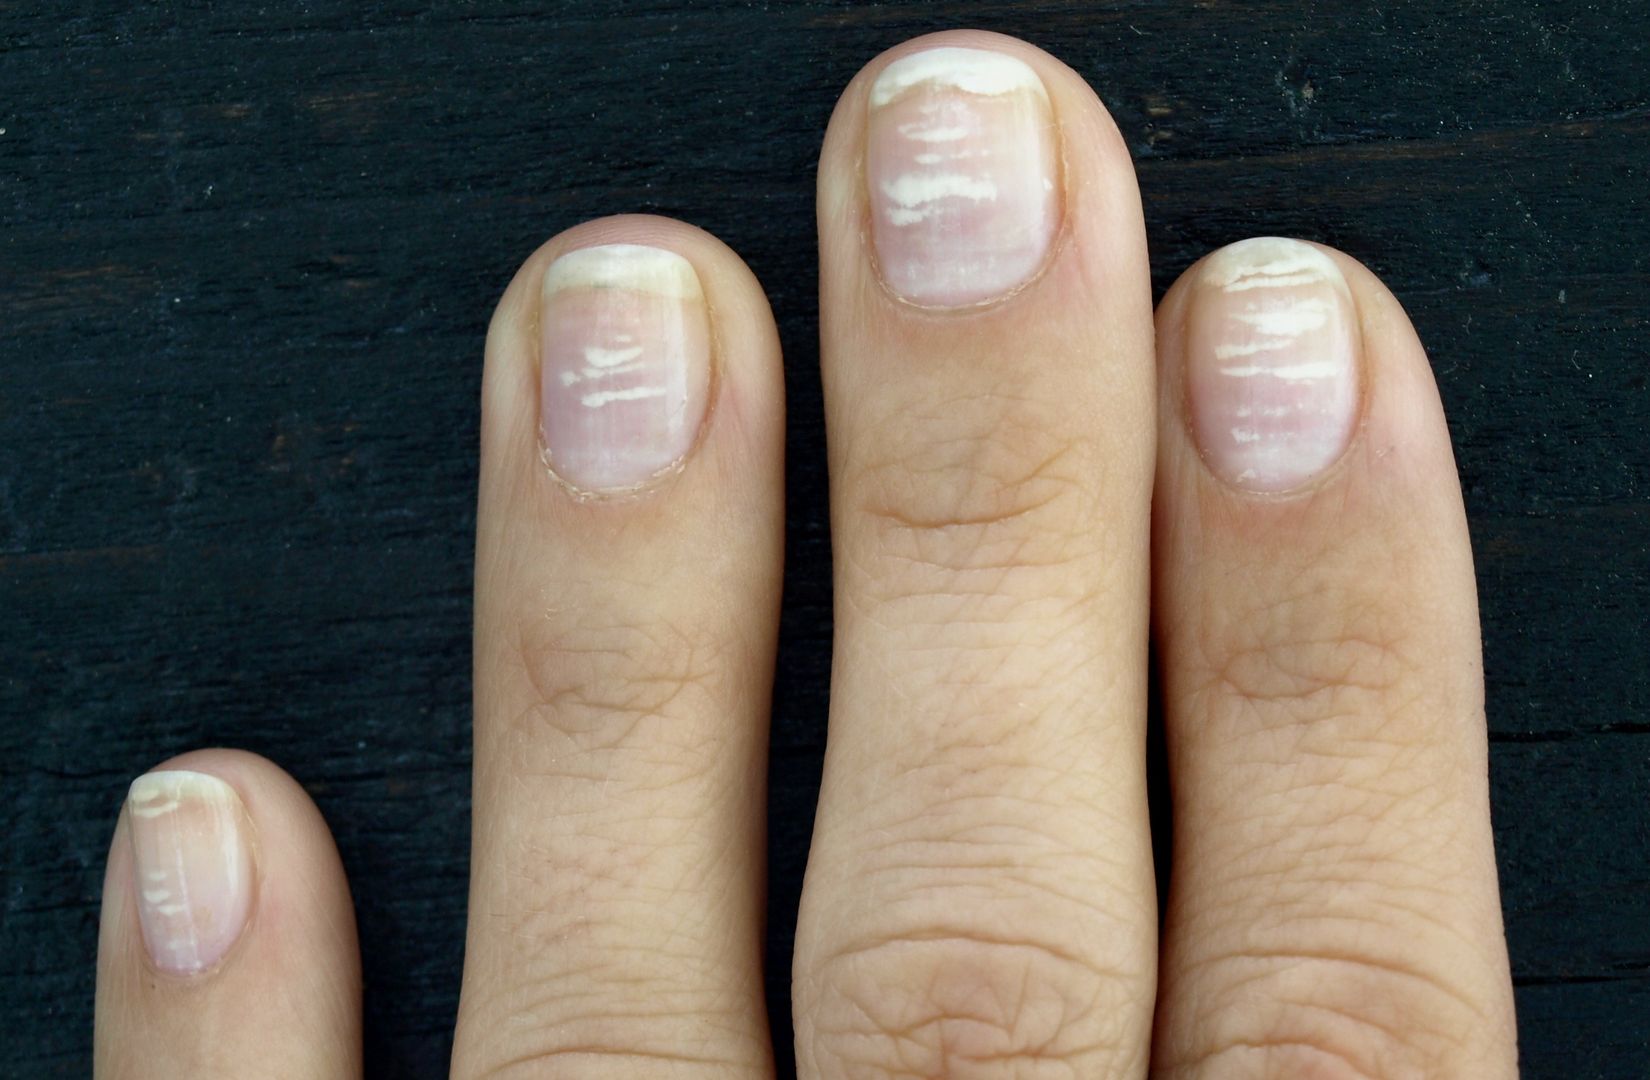 Zauważyłeś białe plamki na paznokciach? Mogą zwiastować problemy zdrowotne